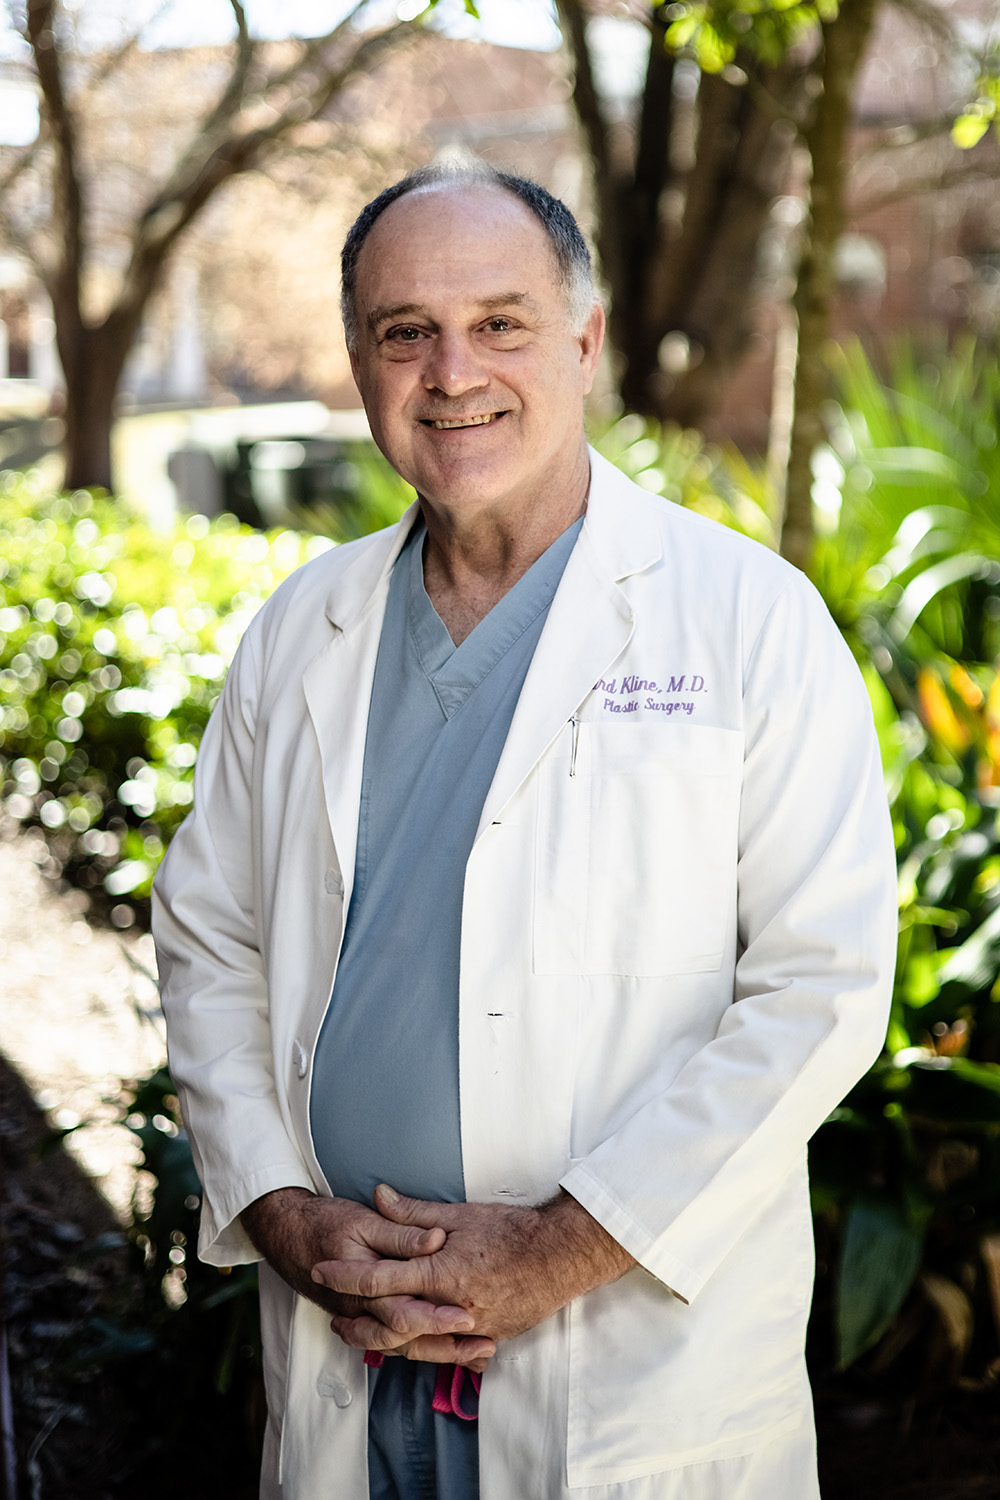  Dr. Richard Kline Jr., M.D.